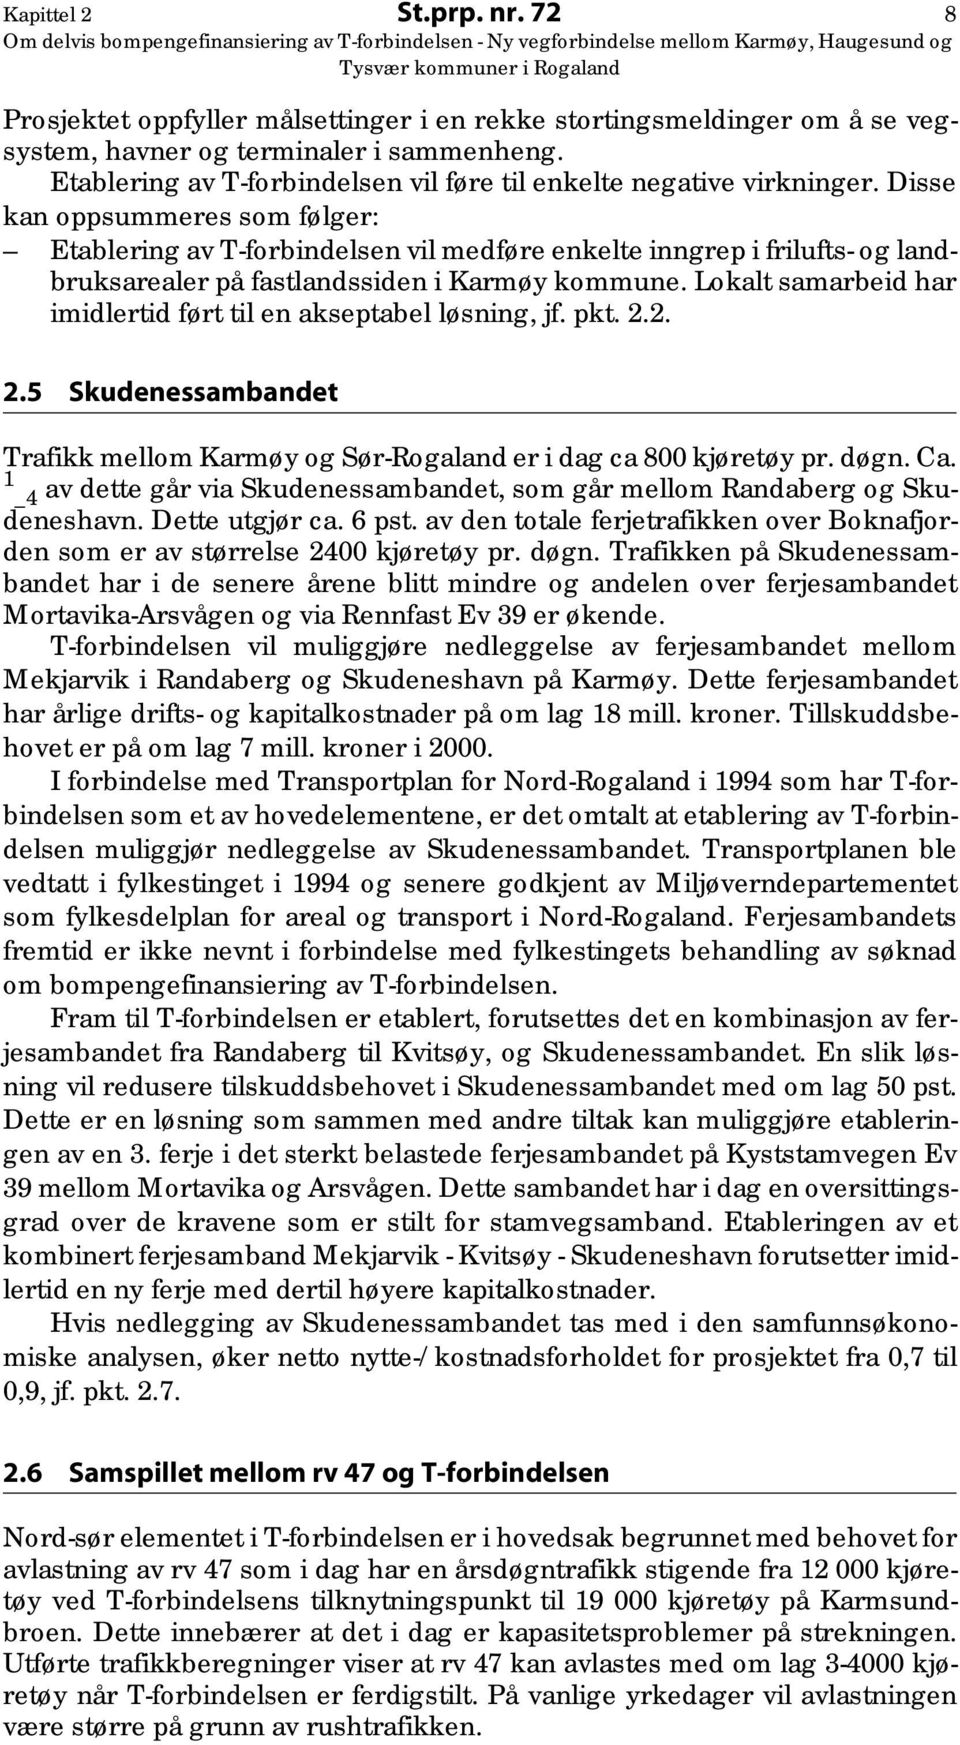 Disse kan oppsummeres som følger: Etablering av T-forbindelsen vil medføre enkelte inngrep i frilufts- og landbruksarealer på fastlandssiden i Karmøy kommune.